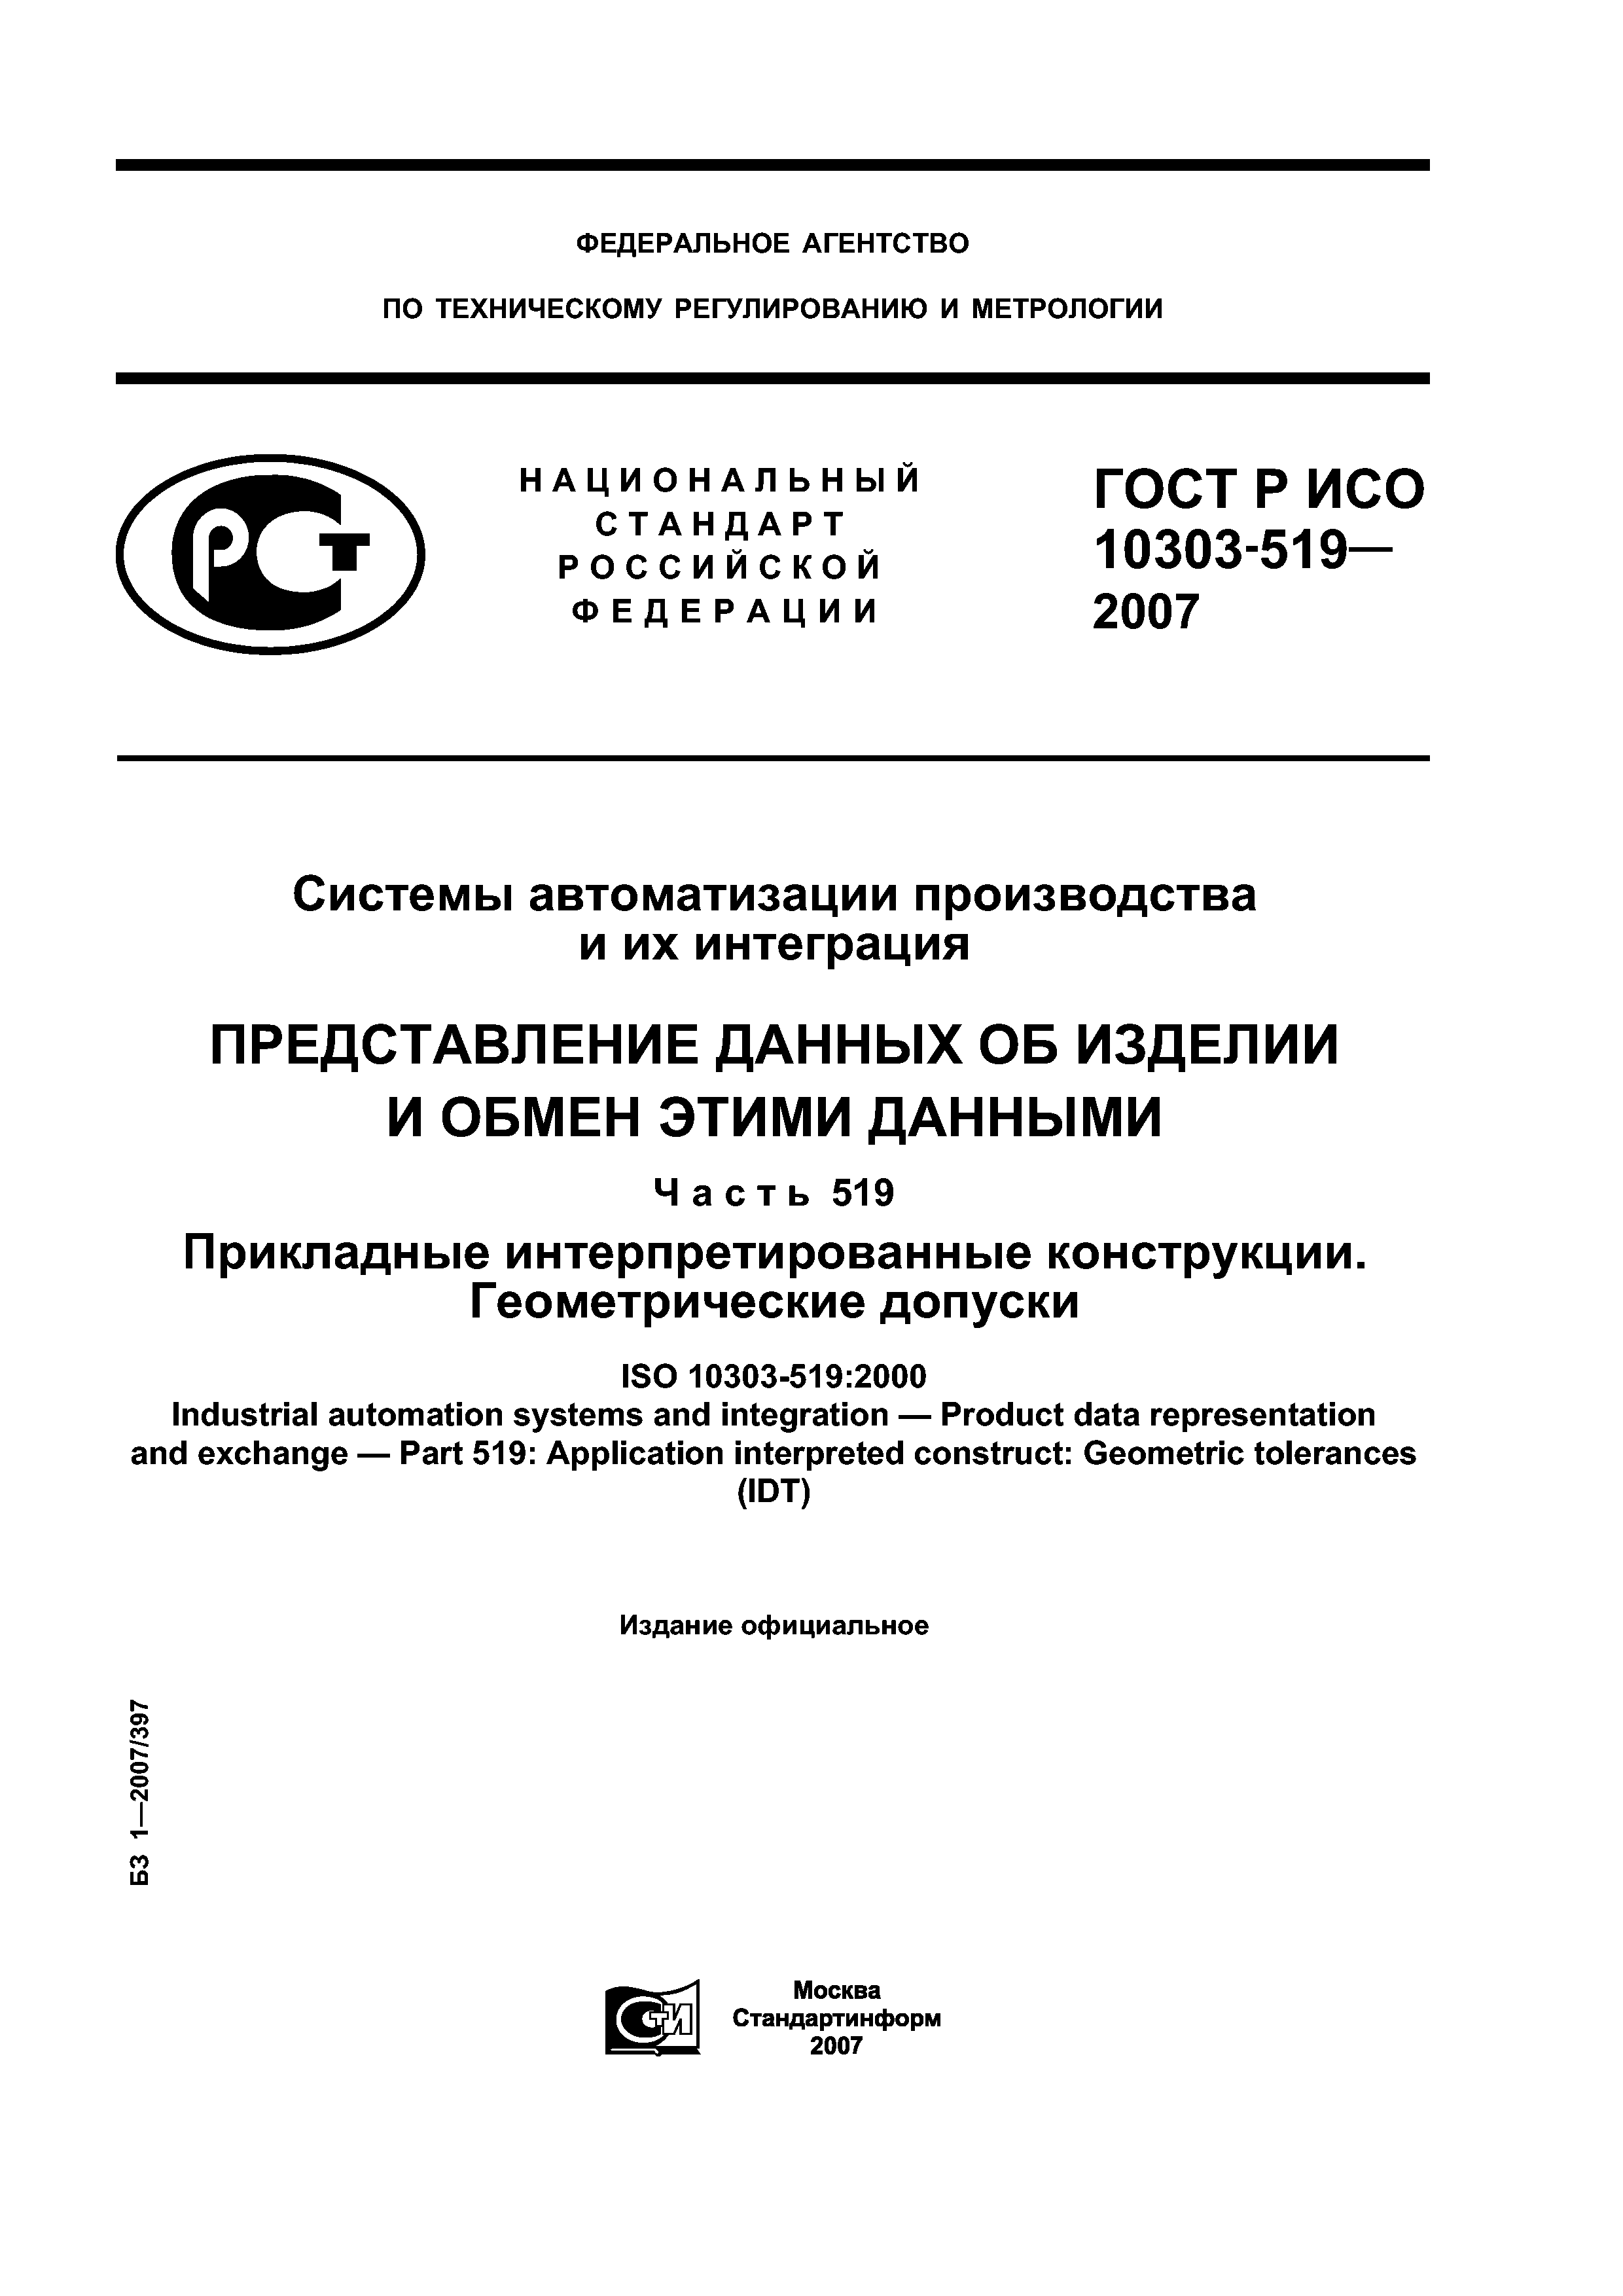 ГОСТ Р ИСО 10303-519-2007